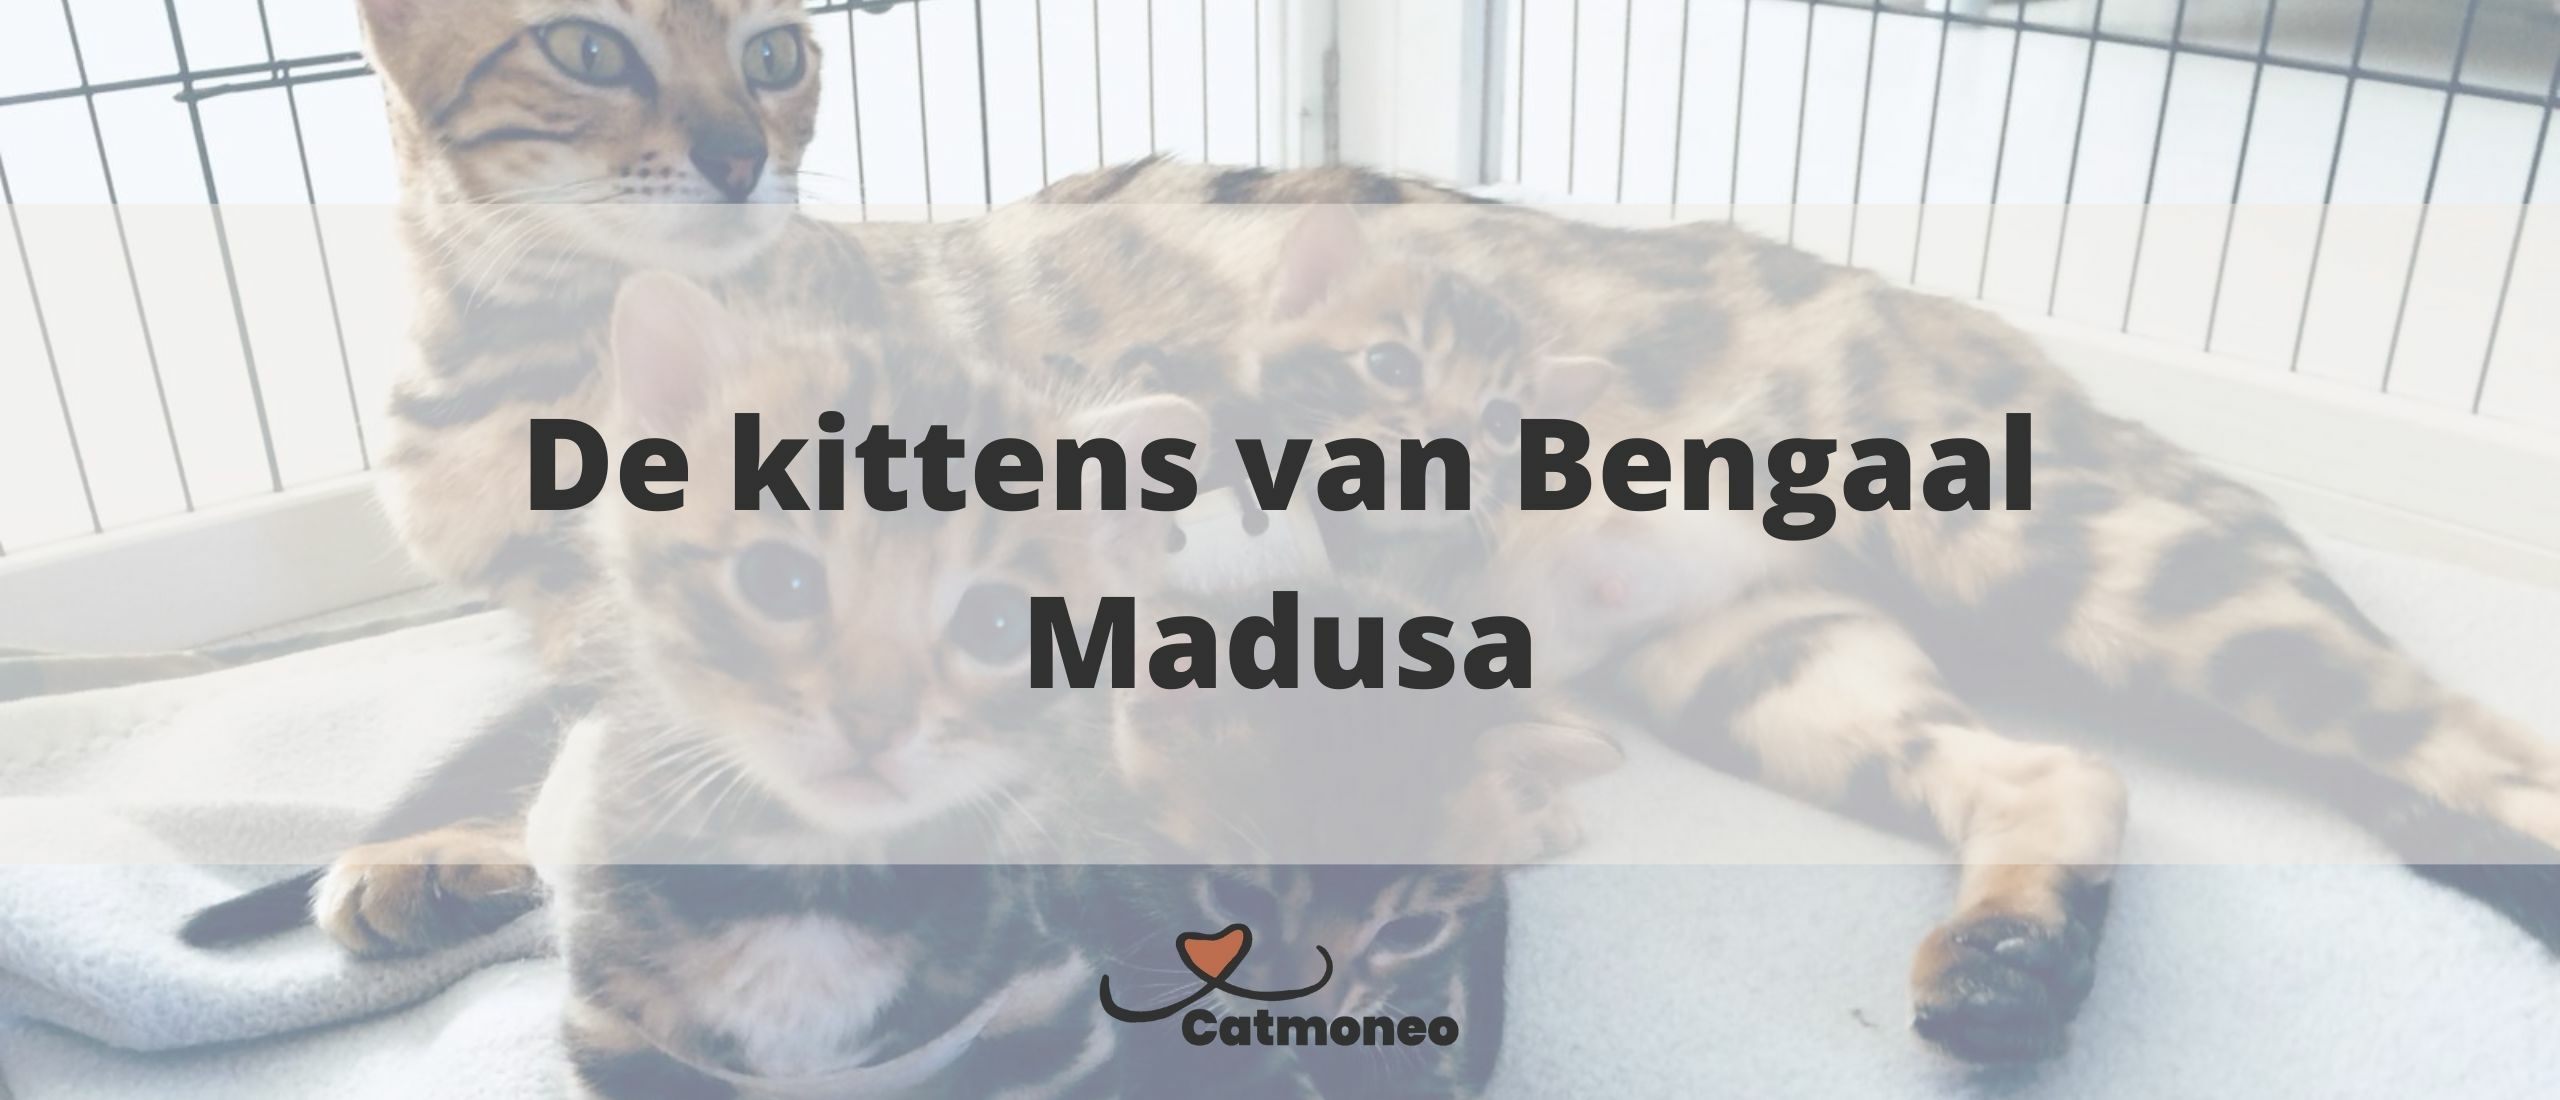 De kittens van Bengaal Madusa